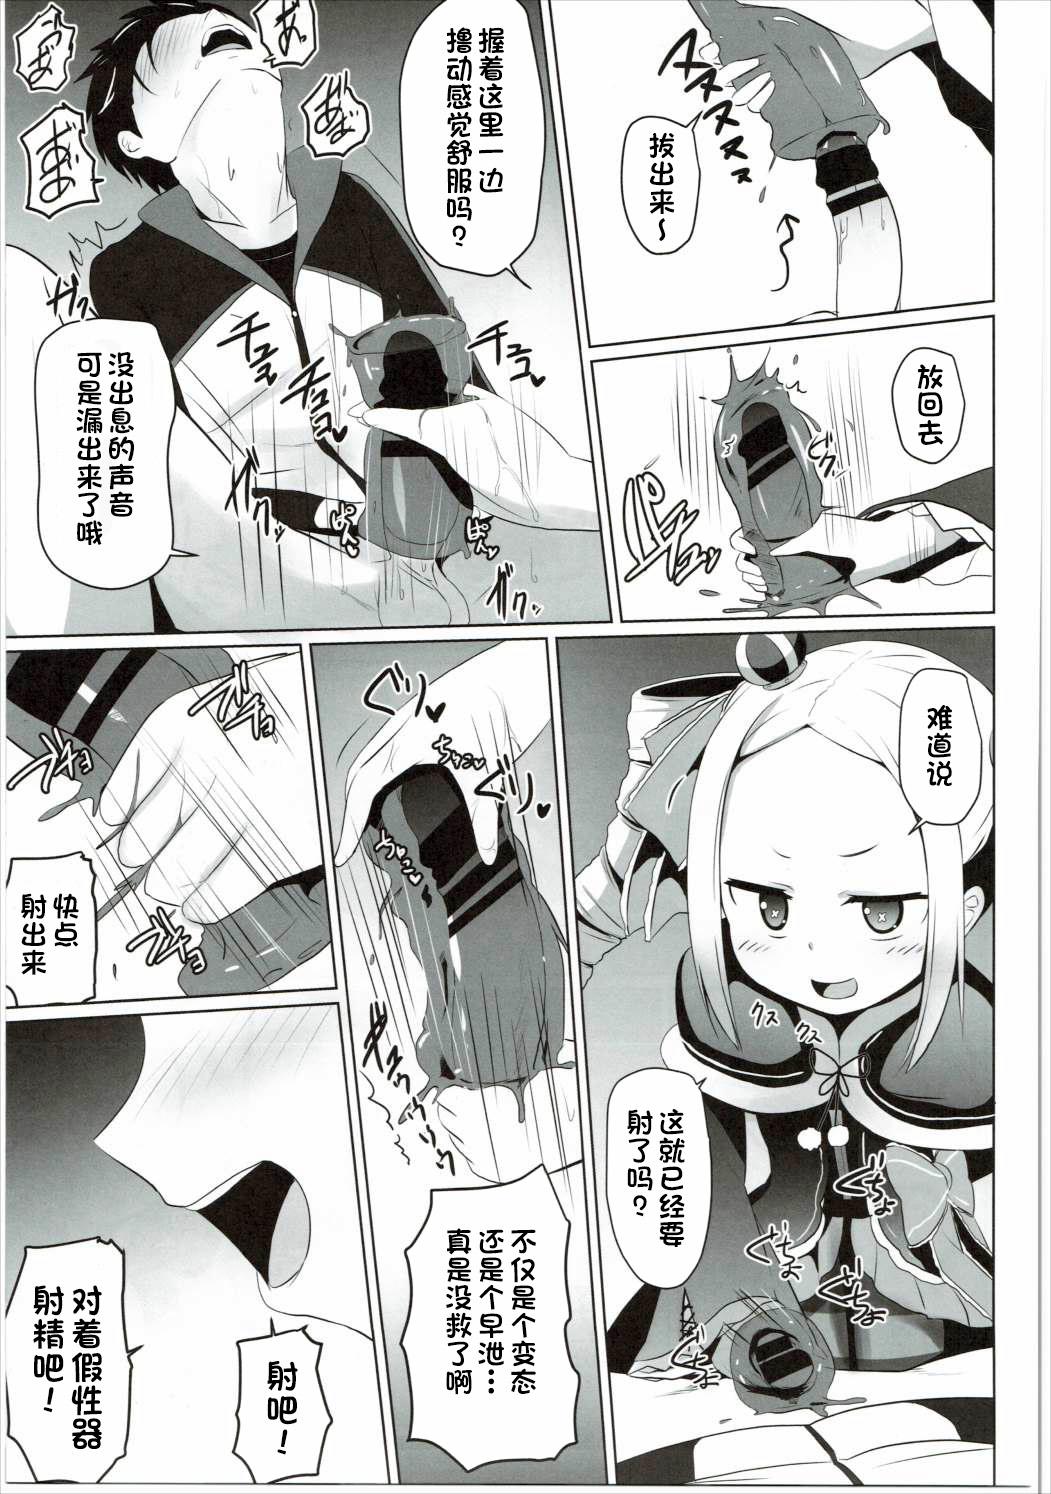 Little Omae Namaiki kashira!! - Re zero kara hajimeru isekai seikatsu Students - Page 10